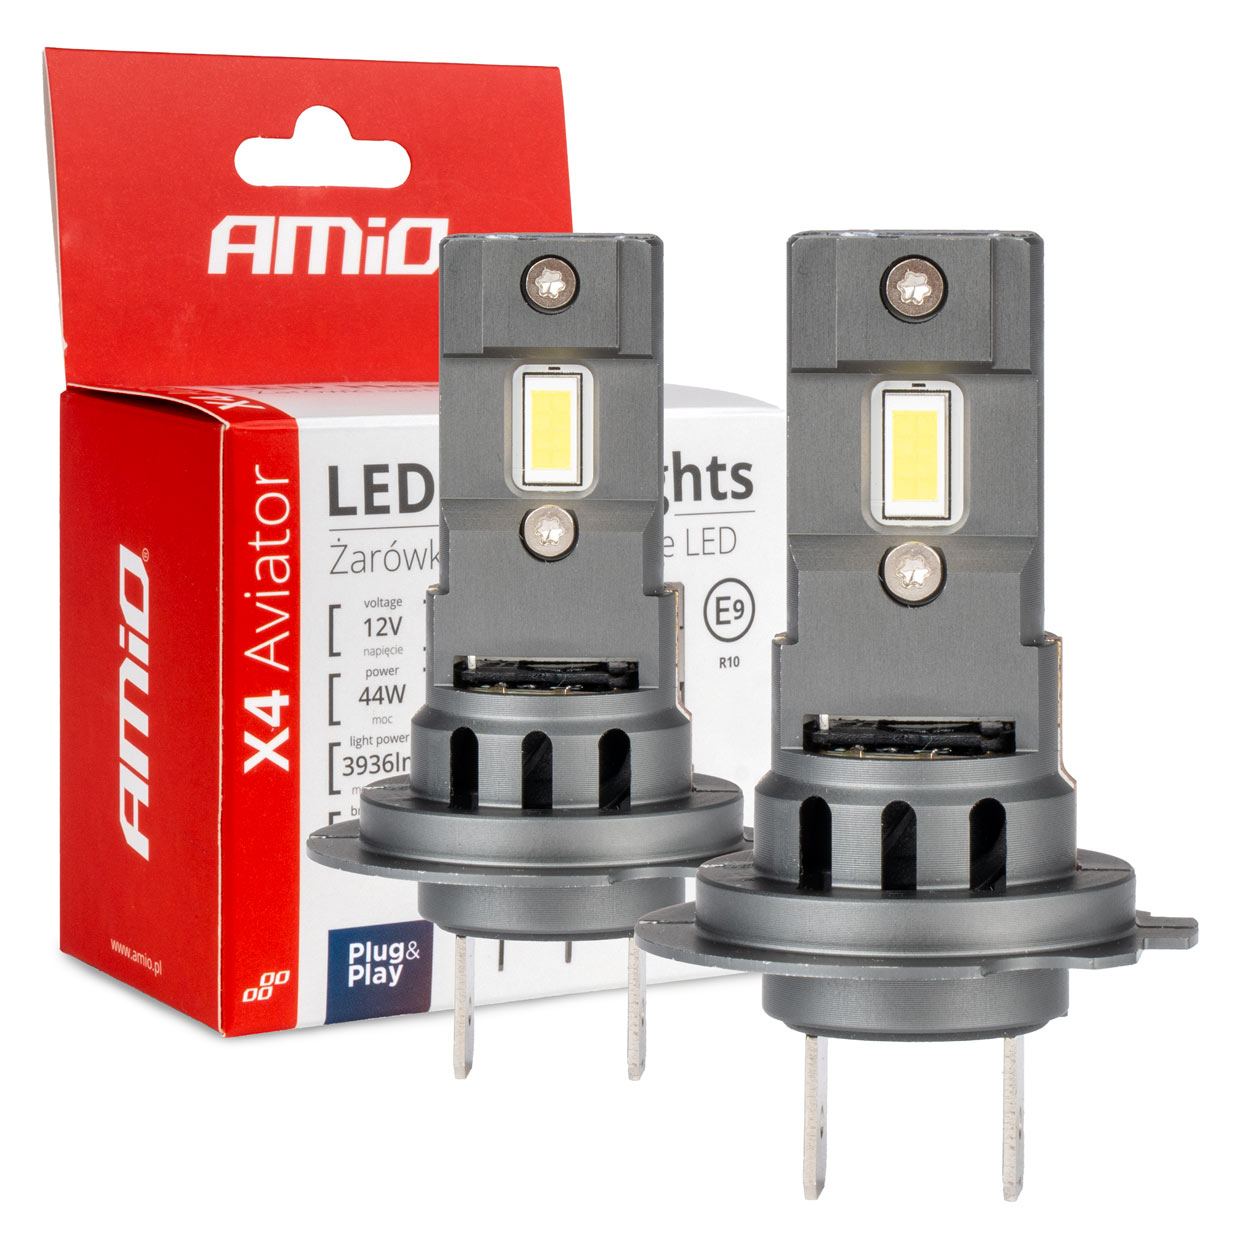 AMIO LED autožárovky H7 X4 Aviator, bílá, 12V, 3936 lm - 2ks